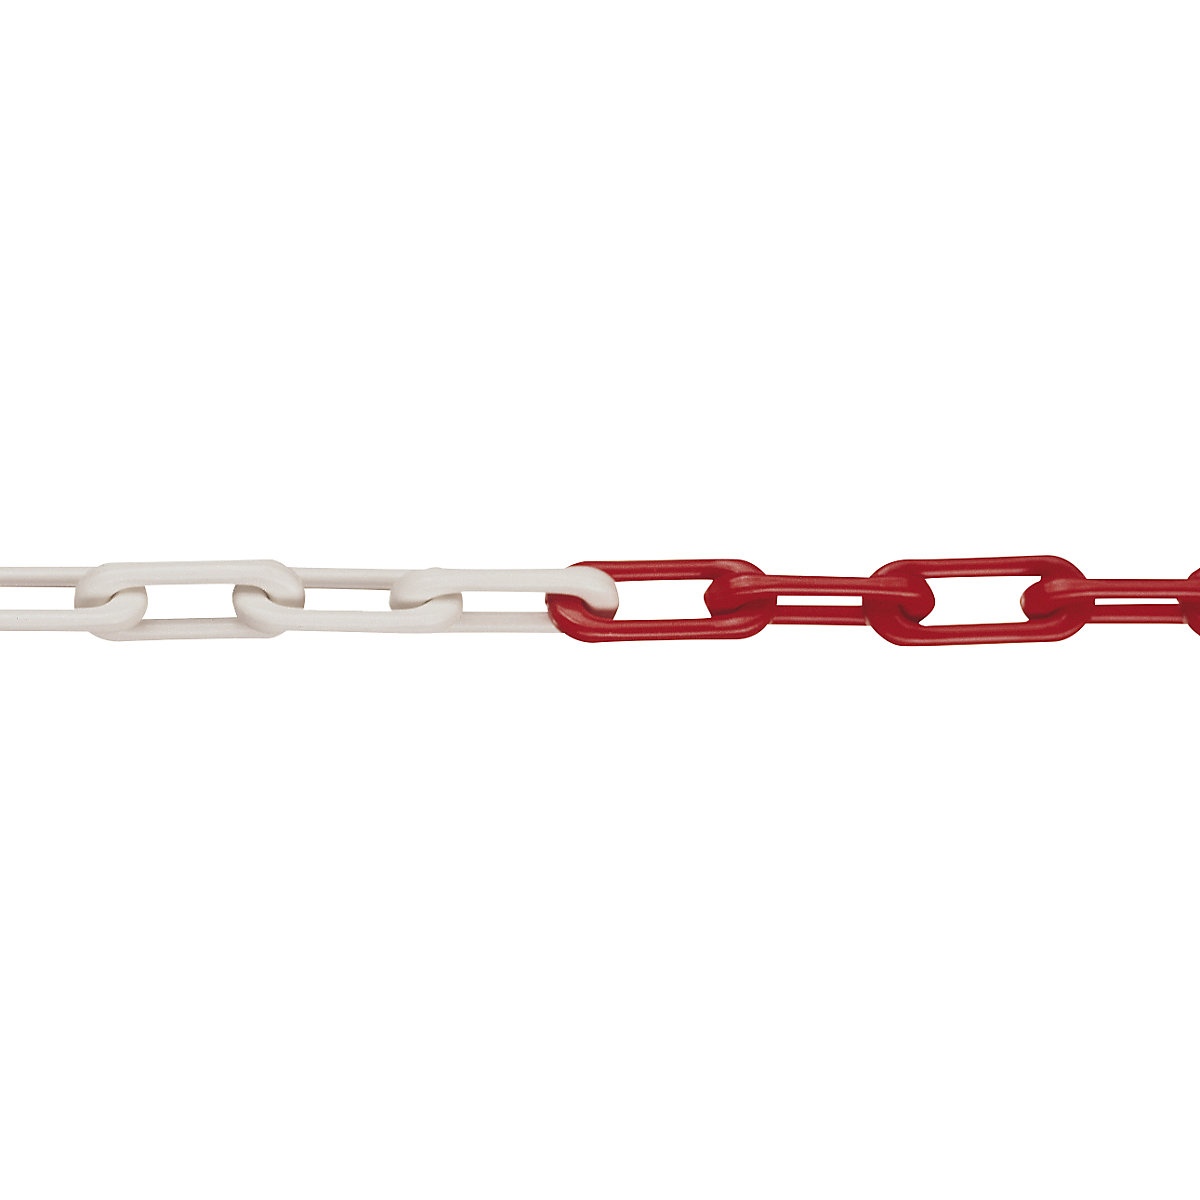 Chaîne en nylon, classe MNK 6, longueur d'épaulement 50 m, rouge-blanc-7